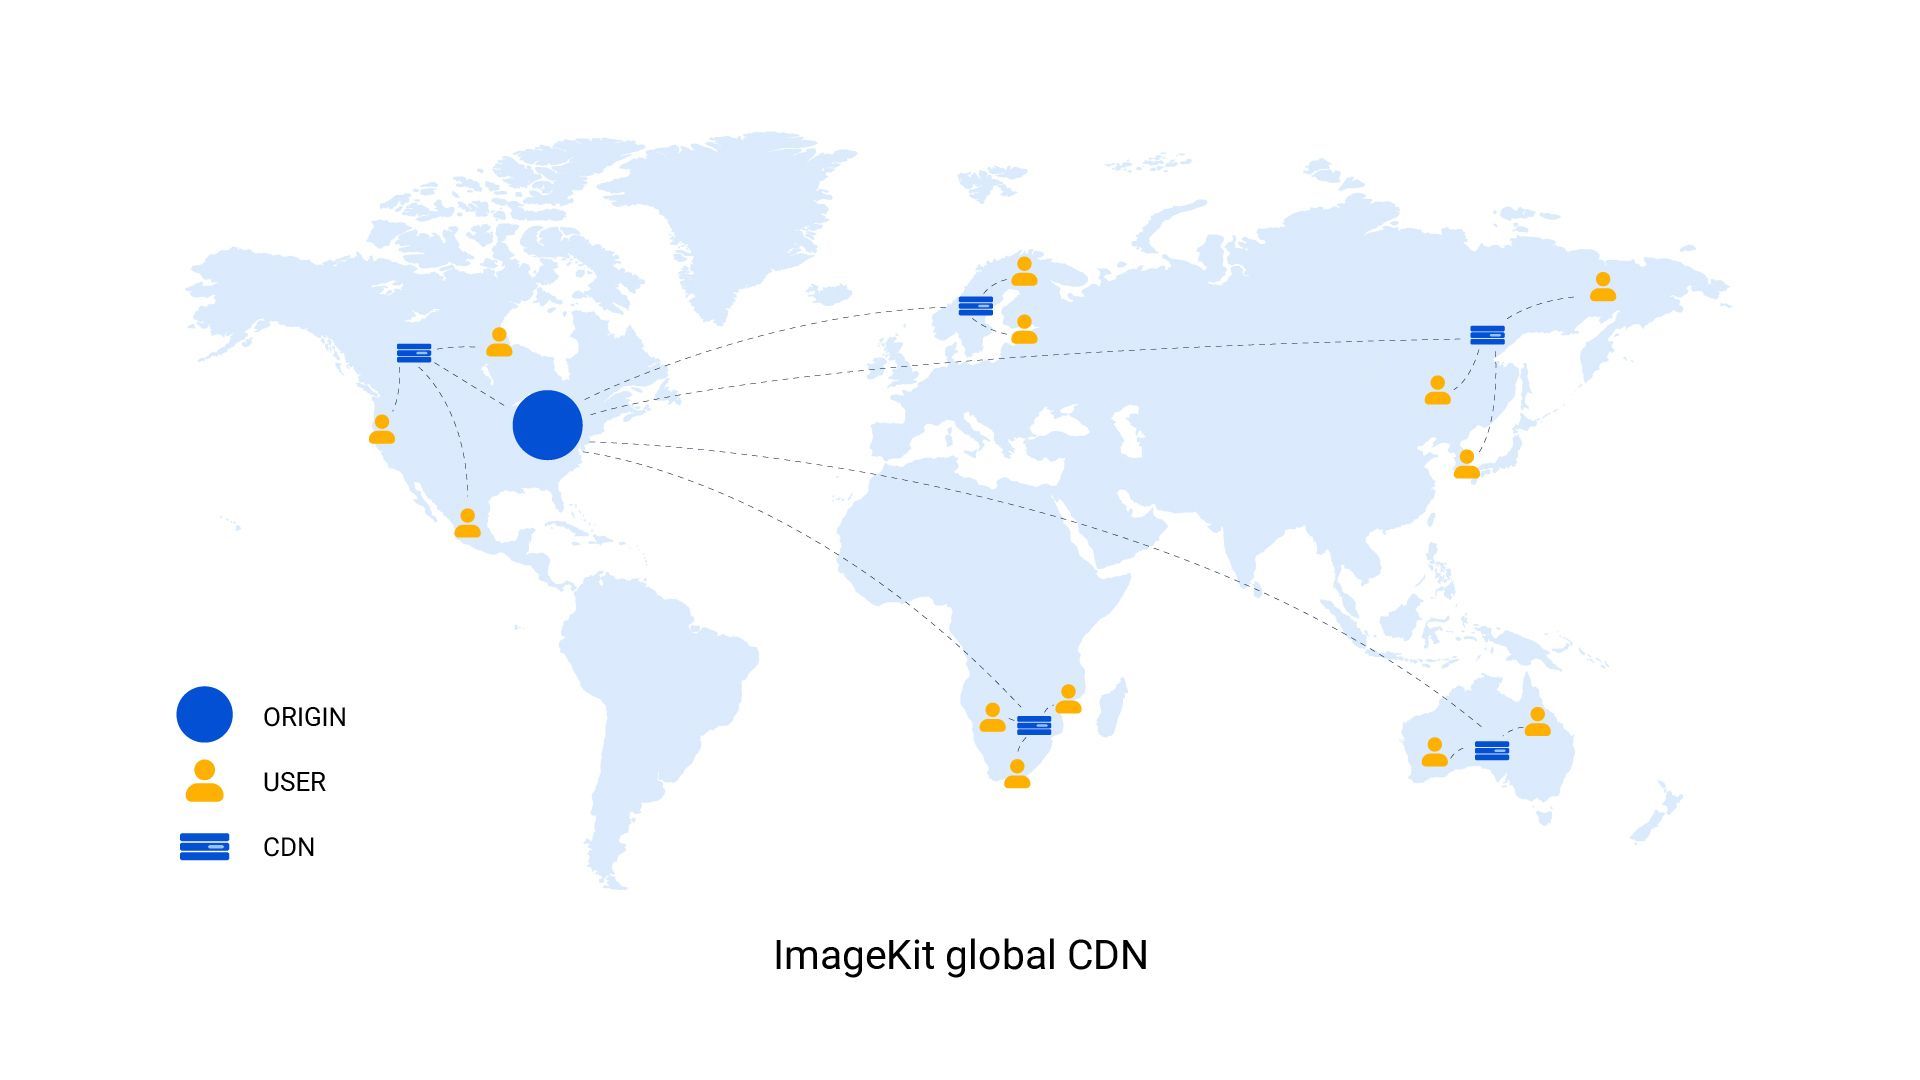 How ImageKit’s global CDN works? 